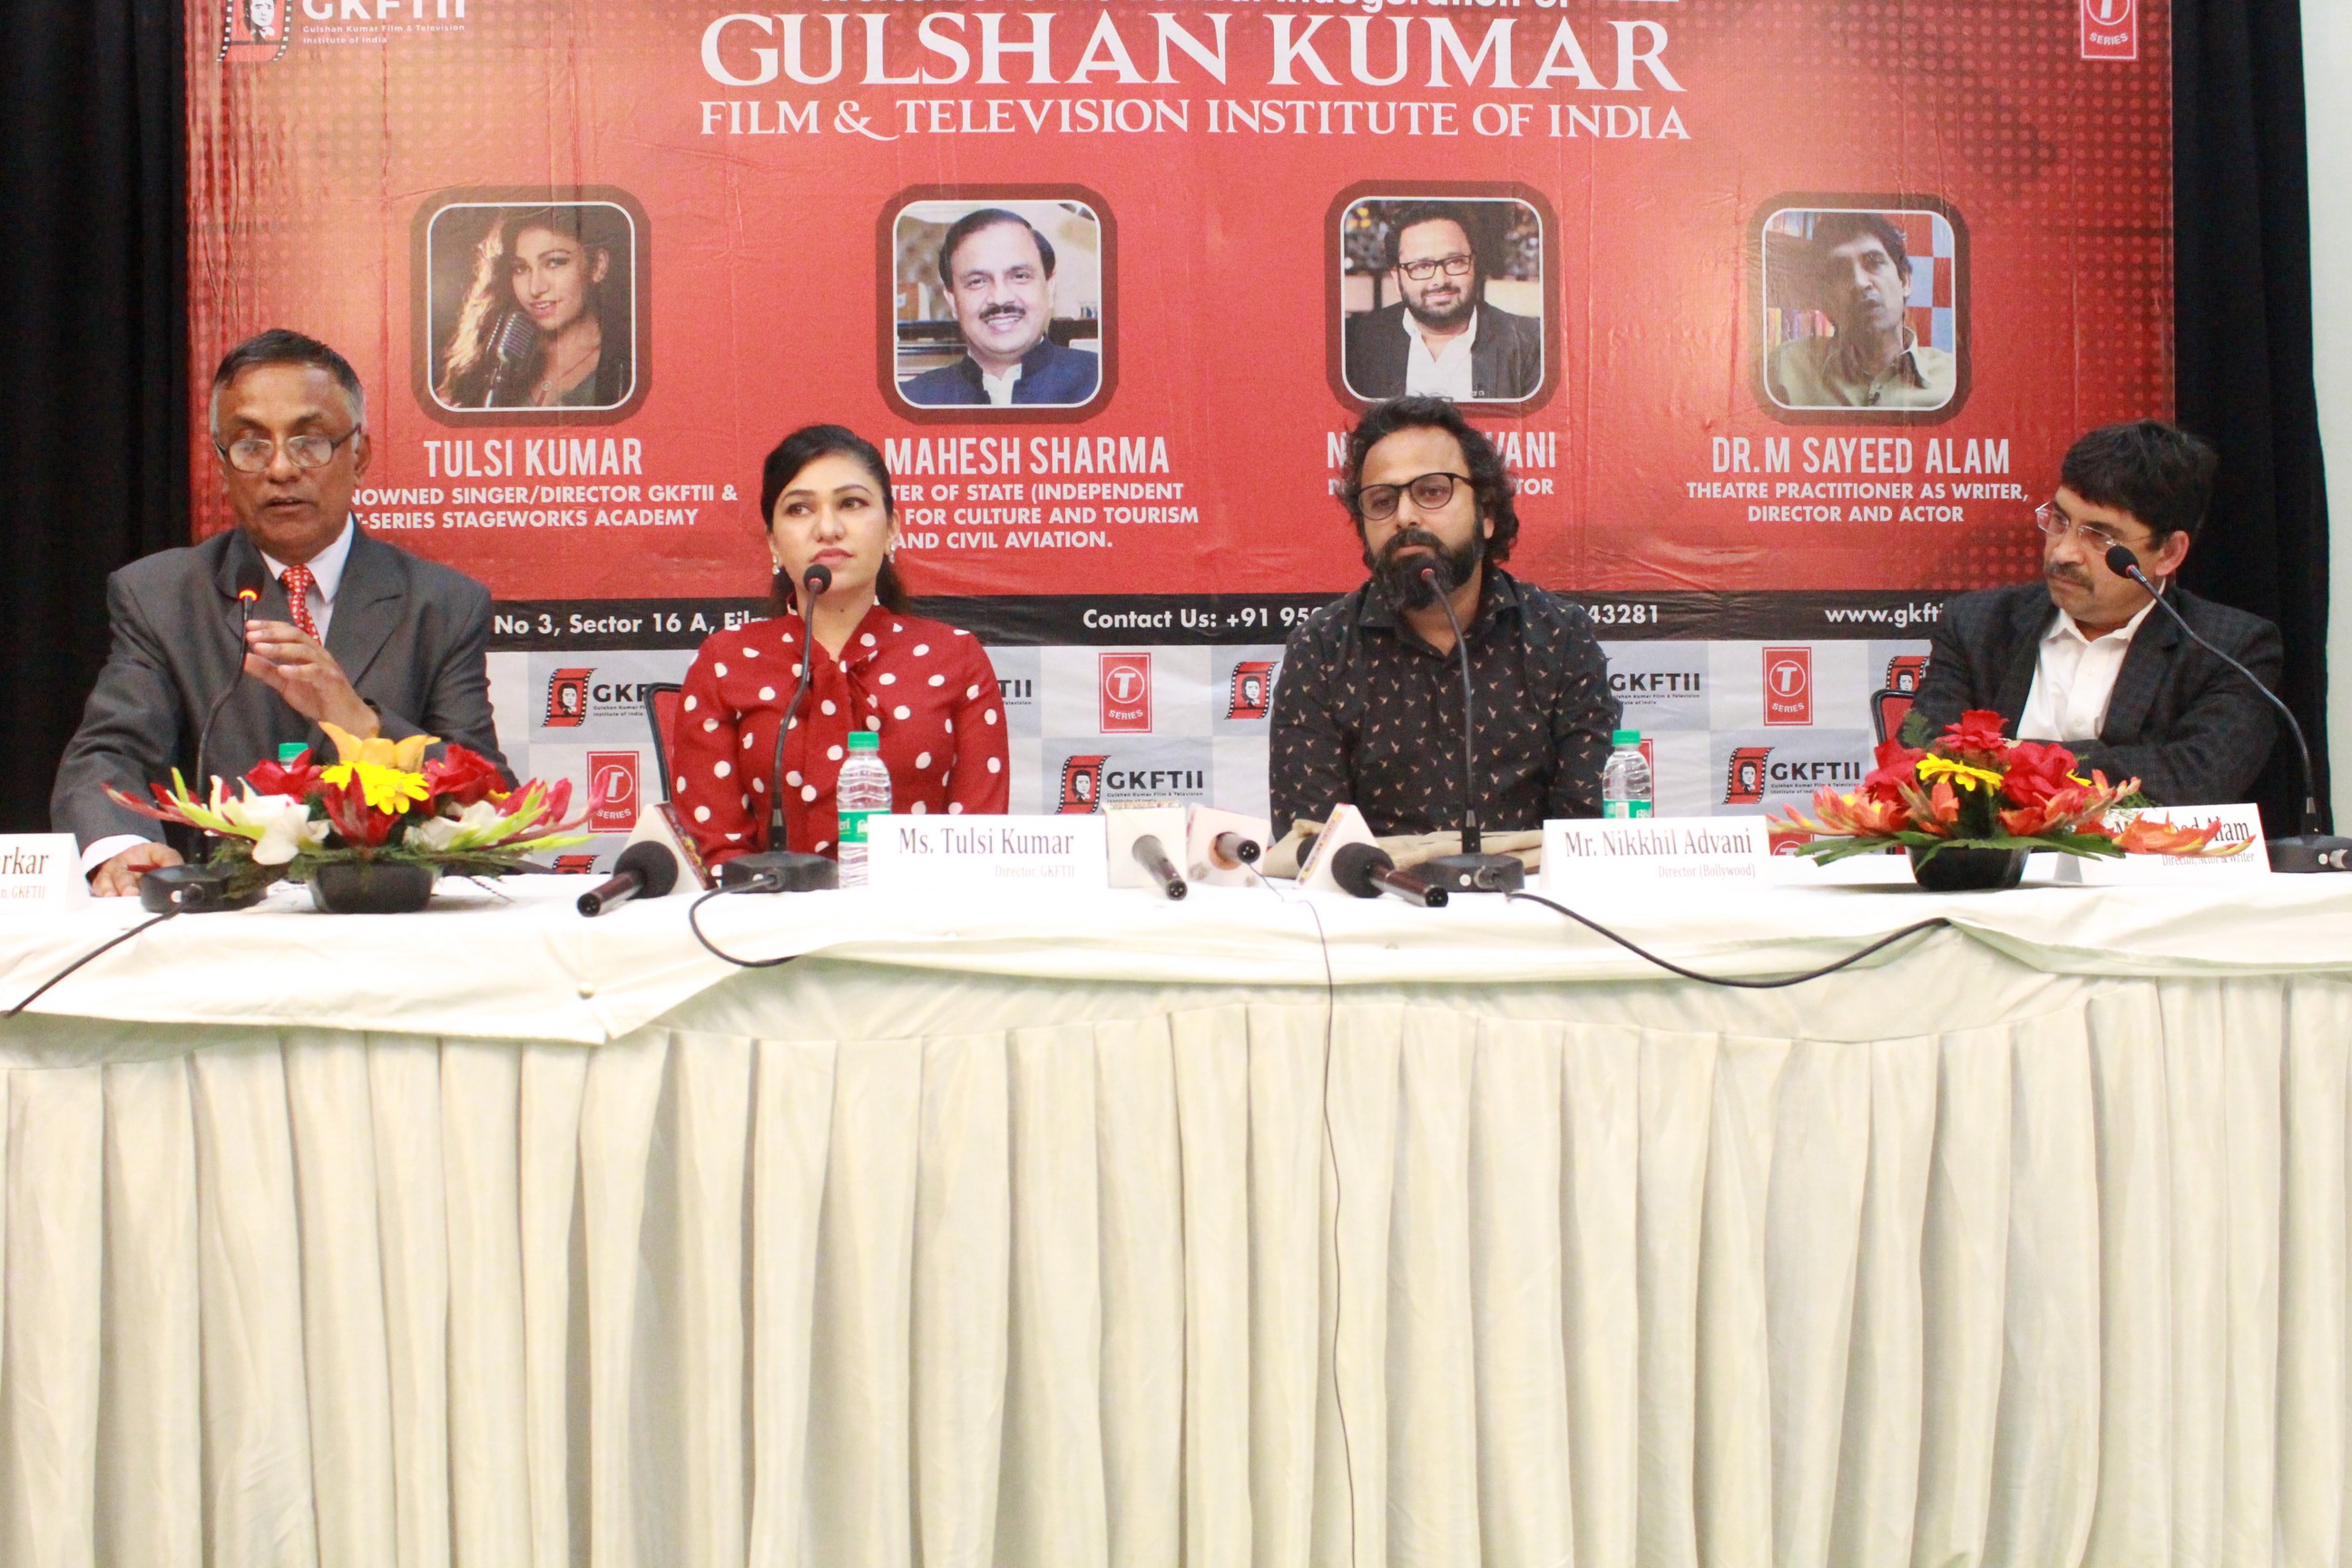 नोएडा में हुआ ‘गुलशन कुमार फिल्म ऐंड टेलीविजन इंस्टीट्यूट आॅफ इंडिया का उद्घाटन